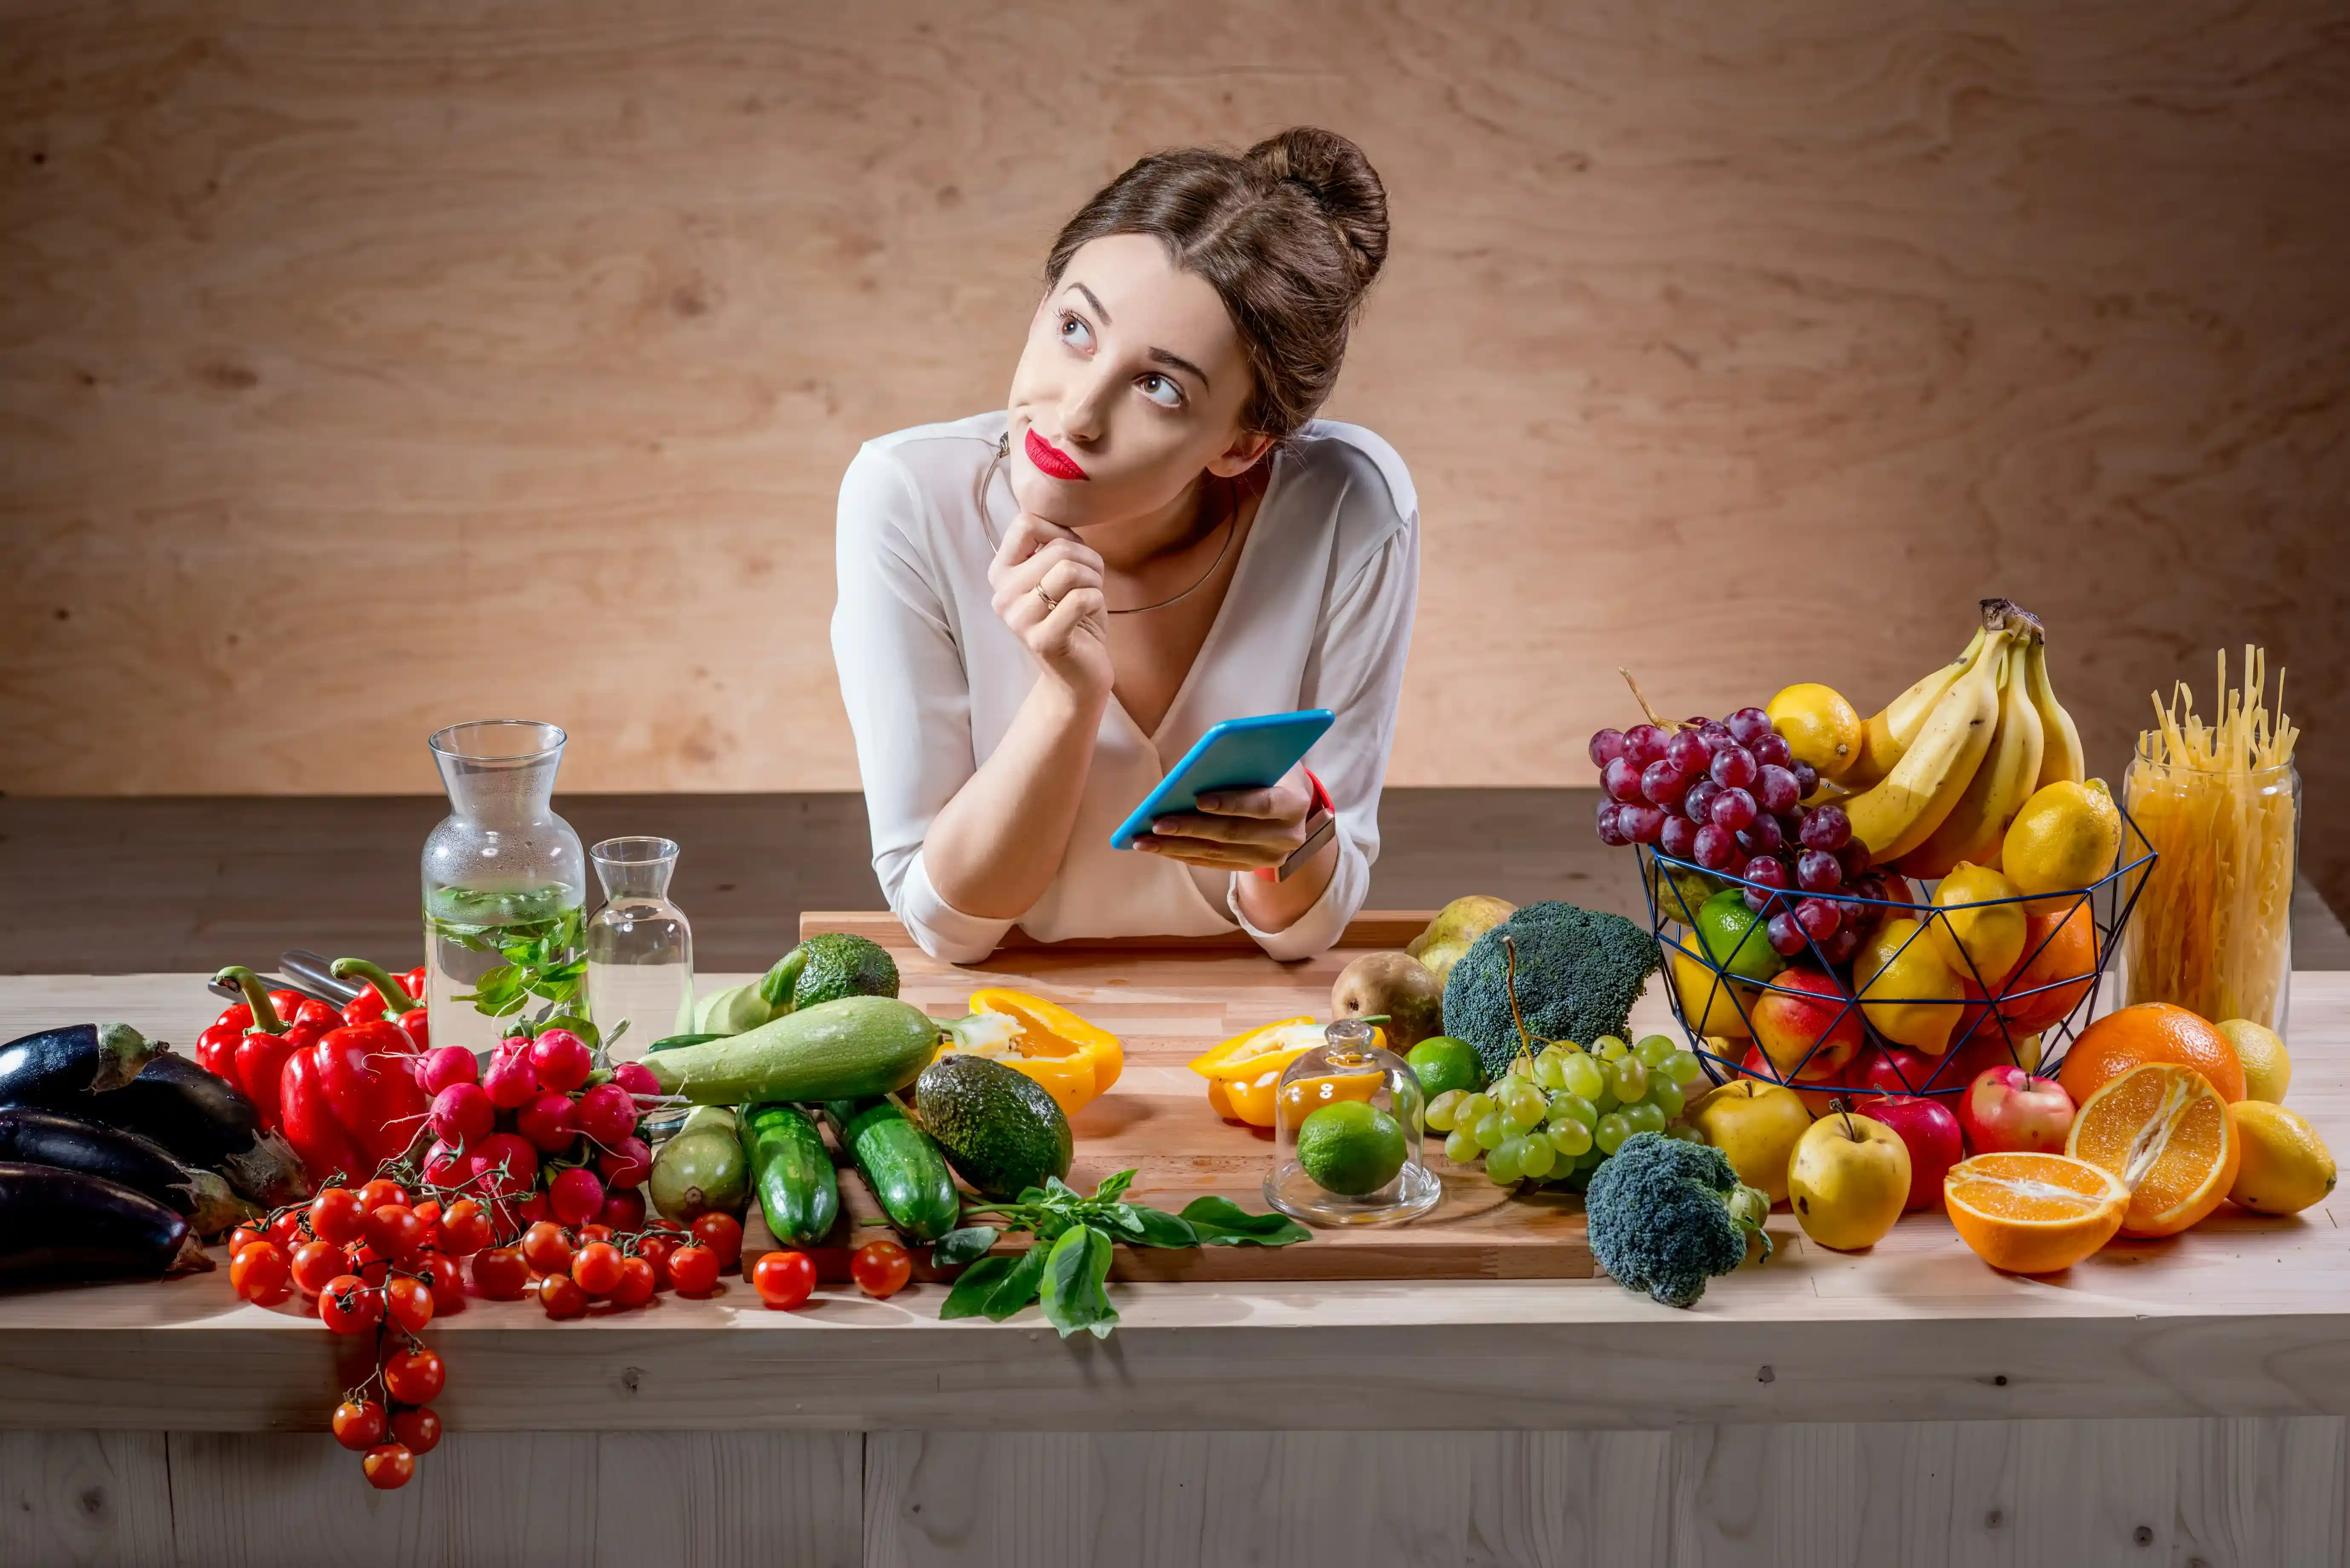 Выбрать качественные продукты. Здоровое питание девушка. Еда на женщине. Фотосессия с овощами и фруктами. Женщина ест овощи и фрукты.